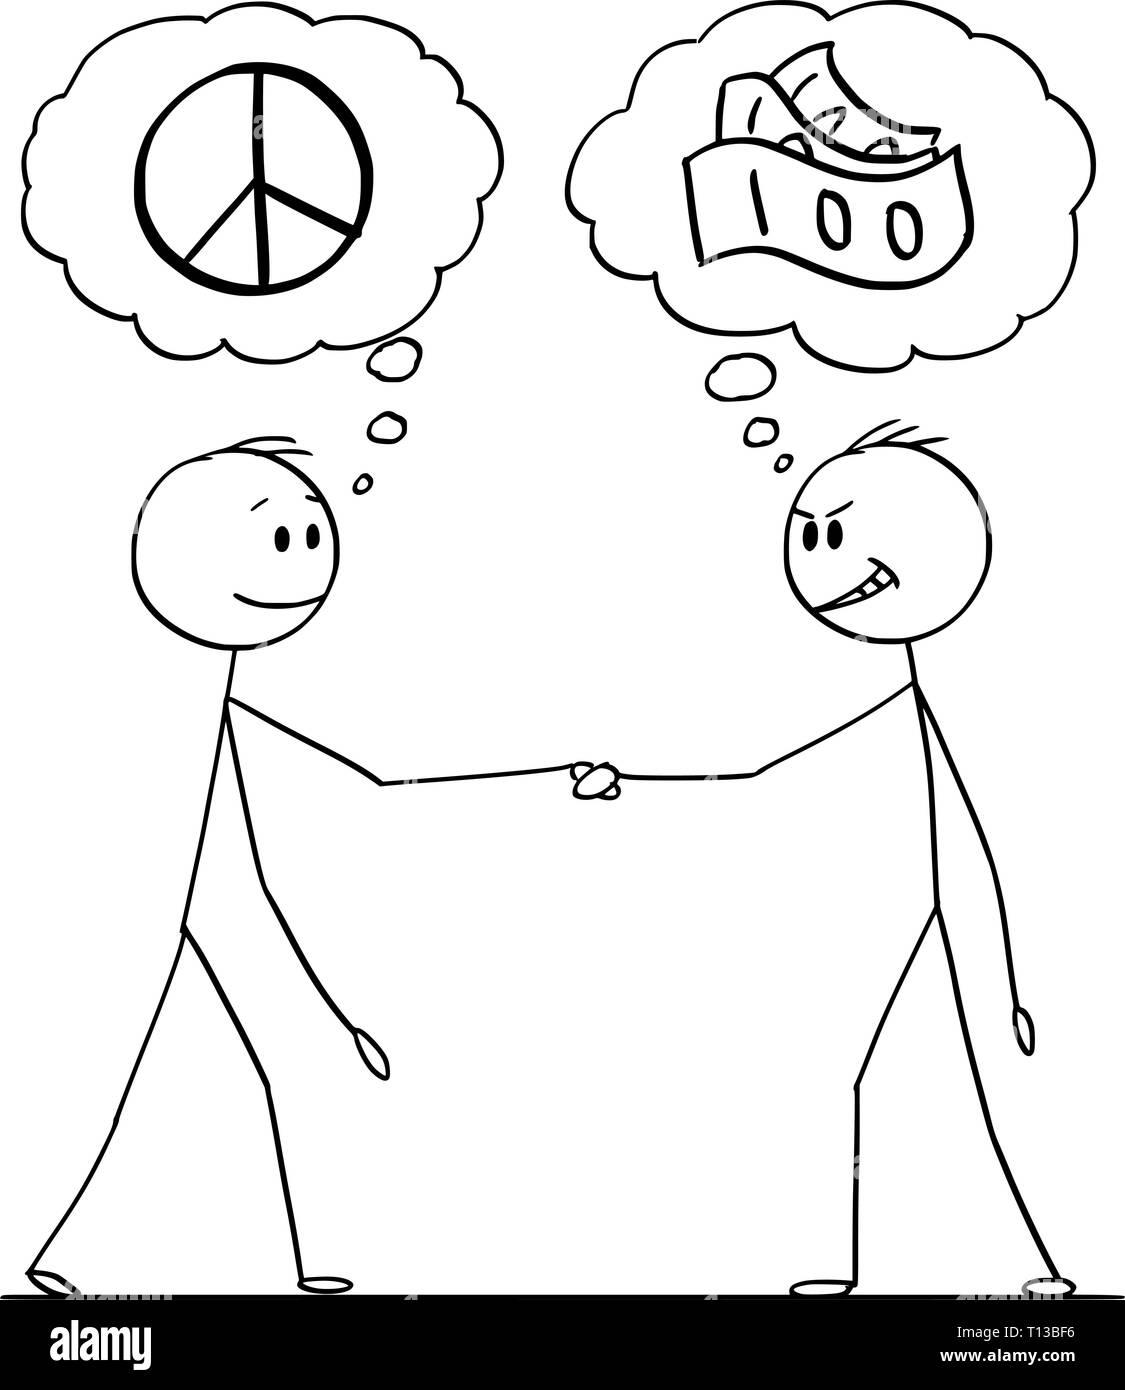 Cartoon stick figura disegno illustrazione concettuale di due uomini o imprenditori o politici lo handshaking di fumetti con pace e simbolo di denaro. Negoziazione con aspettative differenti. Illustrazione Vettoriale